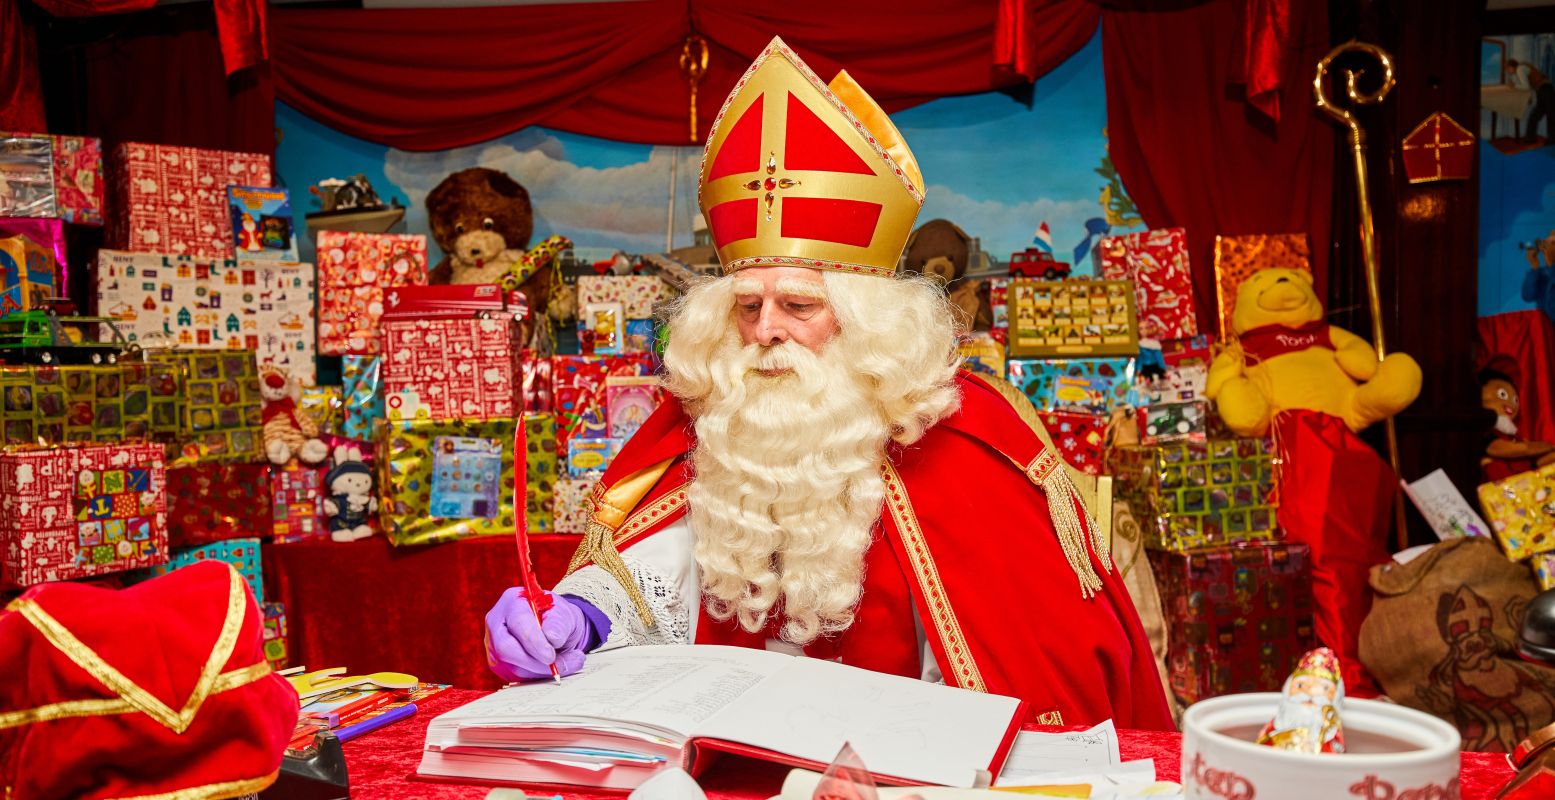 En kijk hoe Sinterklaas aan het werk is op zijn pakjesboot. Foto: Mariniersmuseum